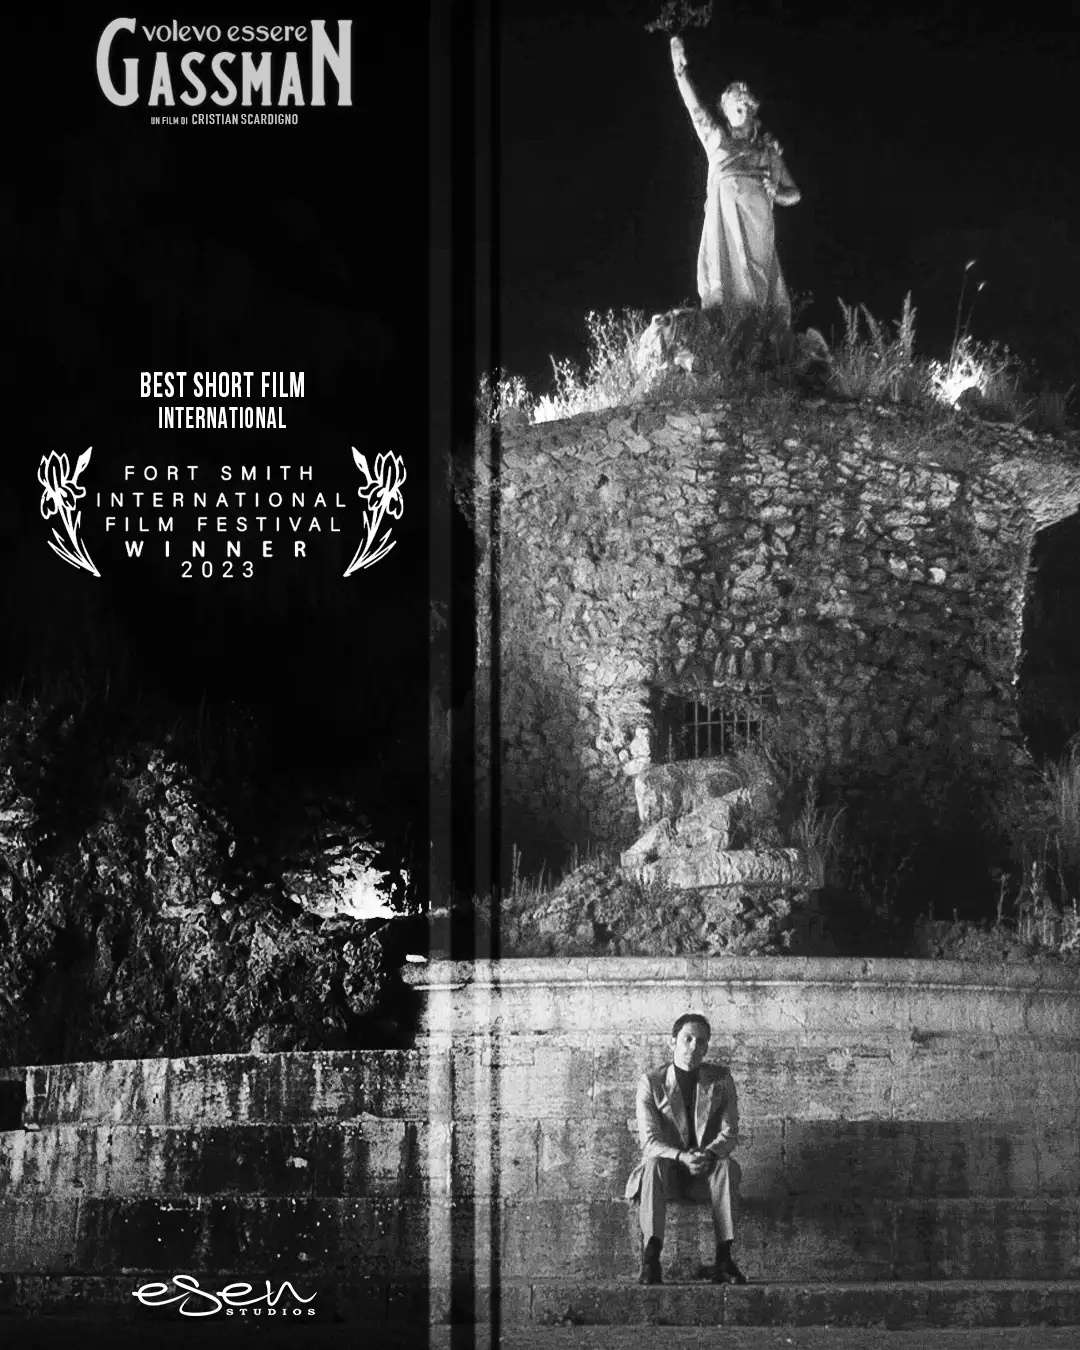 "Volevo essere Gassman" Miglior Cortometraggio del Fort Smith Film Festival